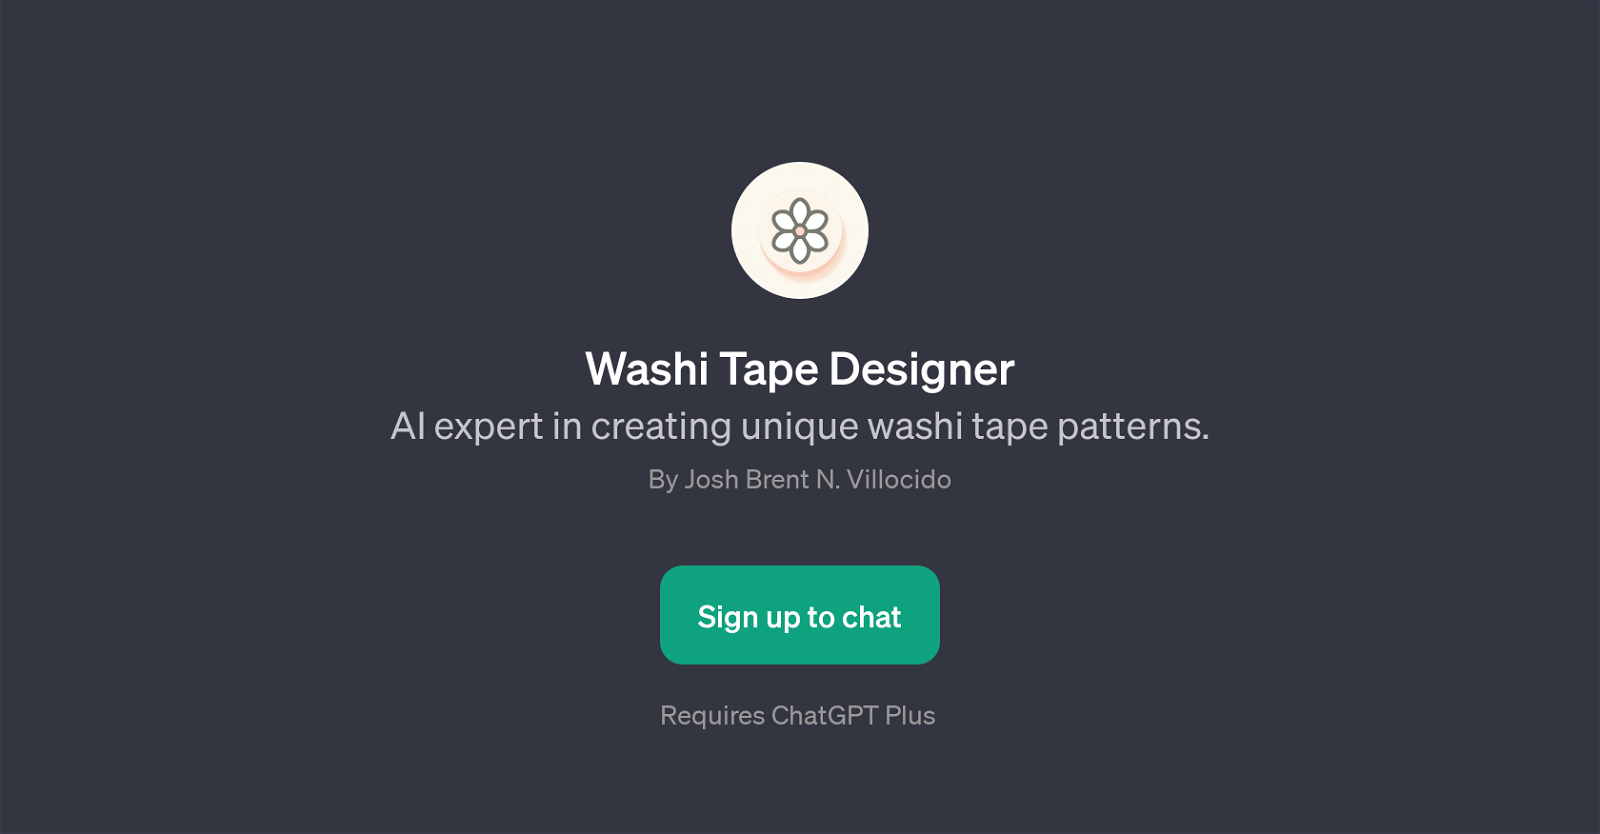 Washi Tape Designer website